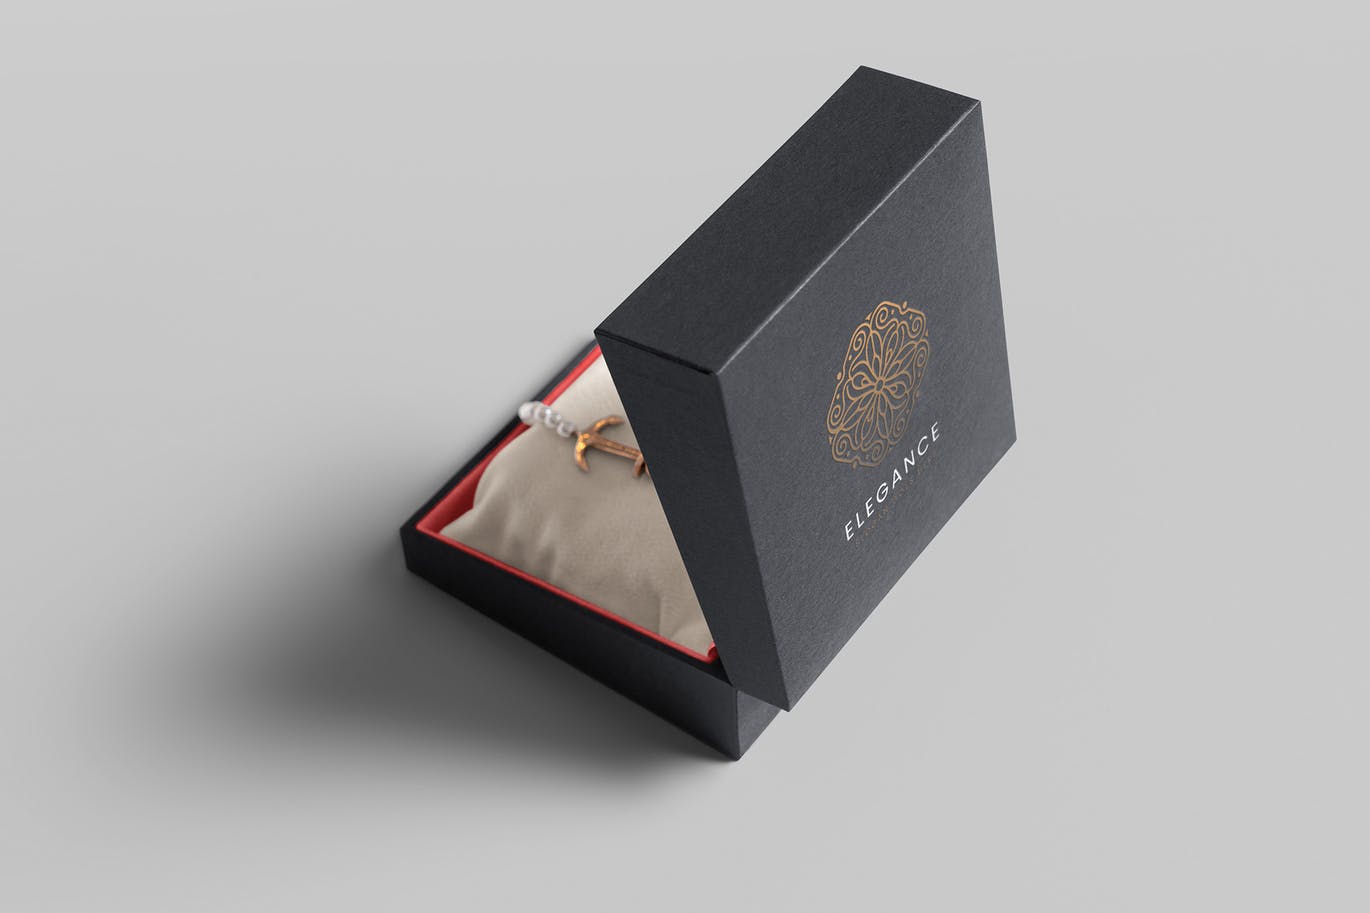 珠宝包装盒设计图素材中国精选模板 Jewelry Packaging Box Mockups插图(4)